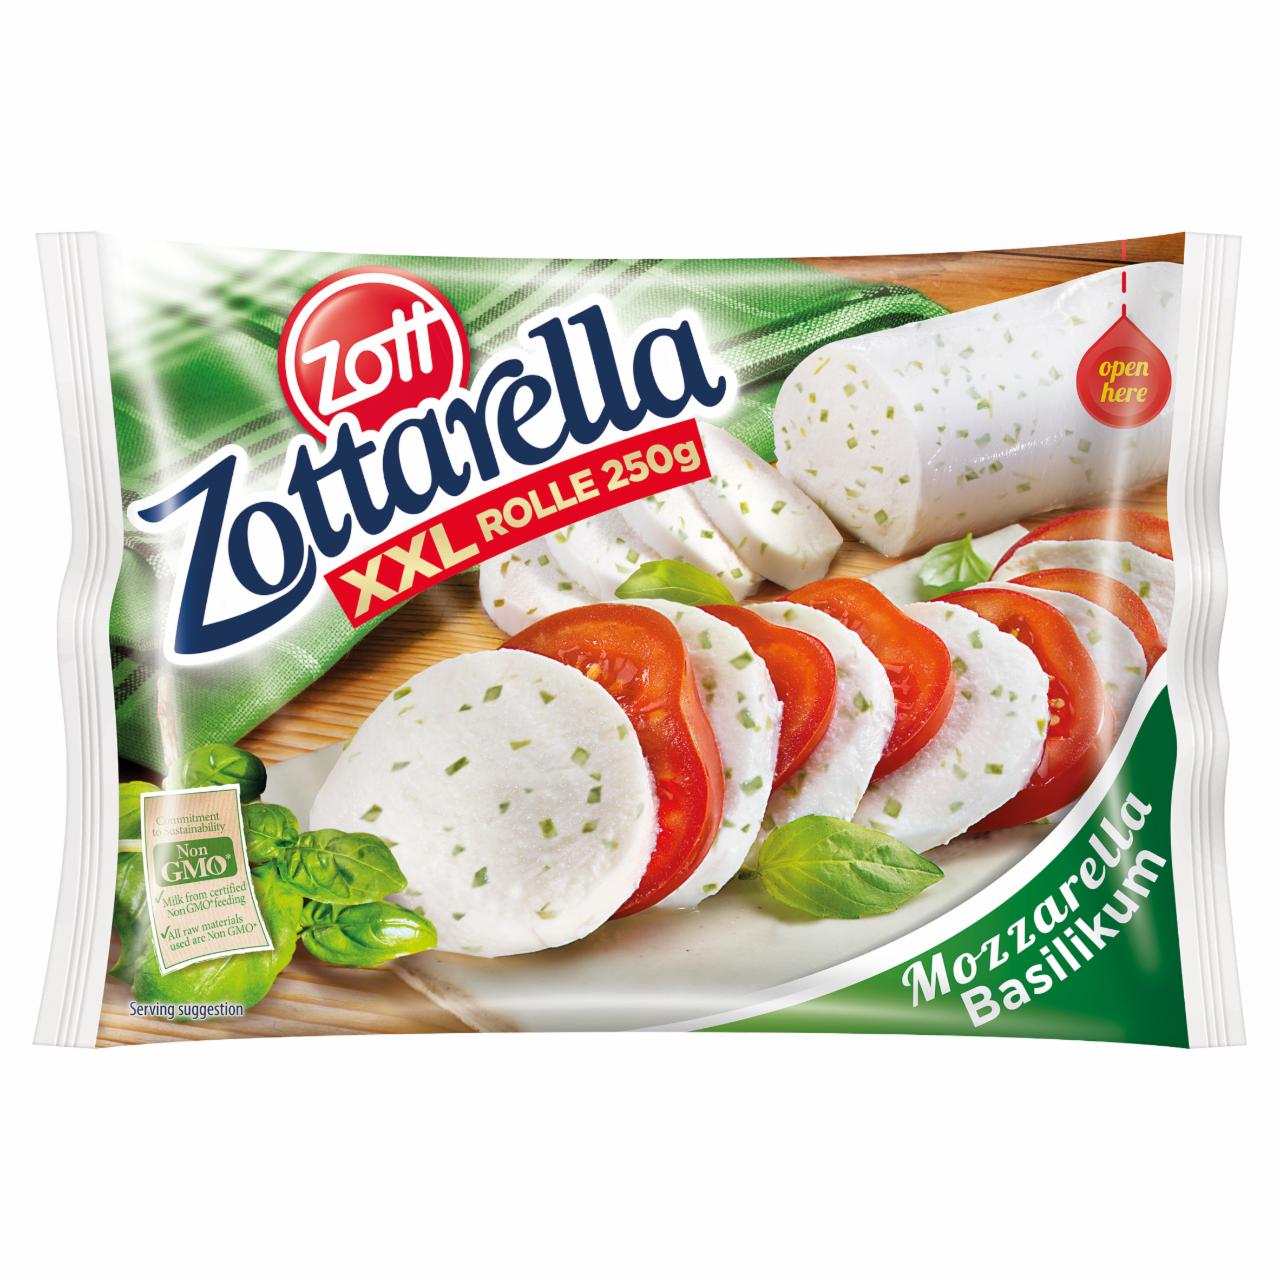 Photo - Zott Zottarella Fat Soft Mozzarella Cheese with Basil in Brine 250 g